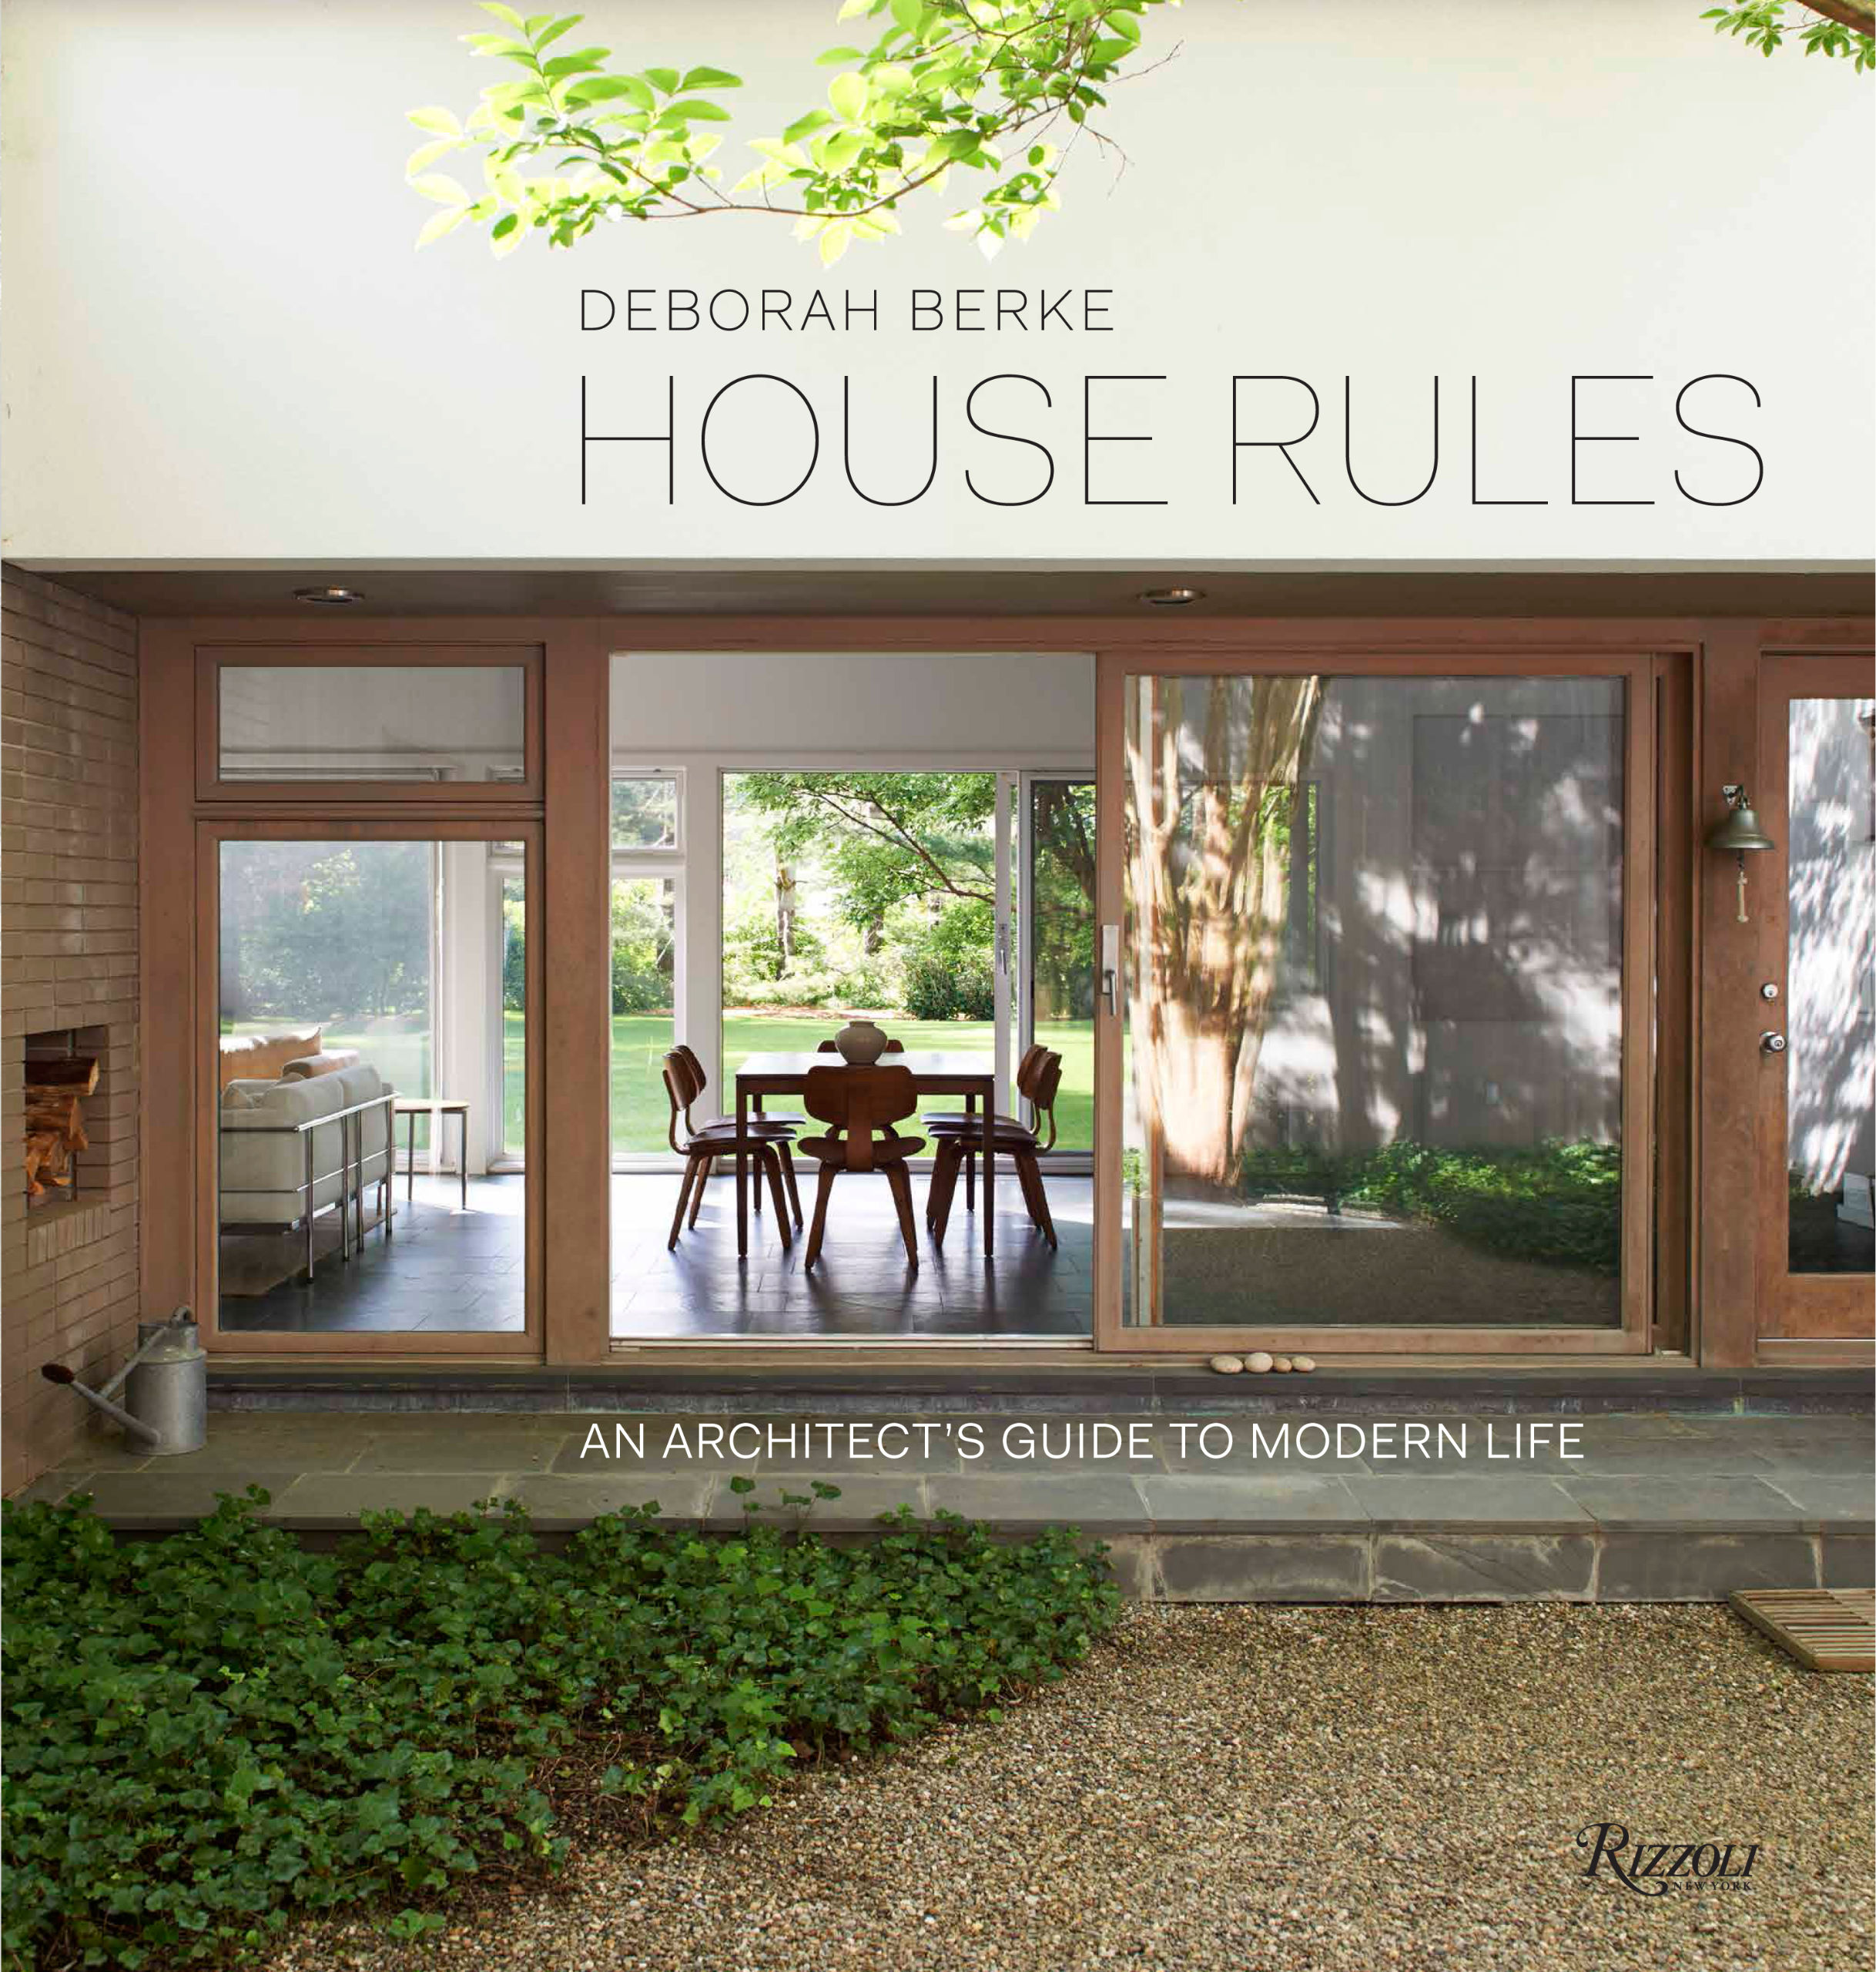 Cover of "House Rules" by Deborah Berke.